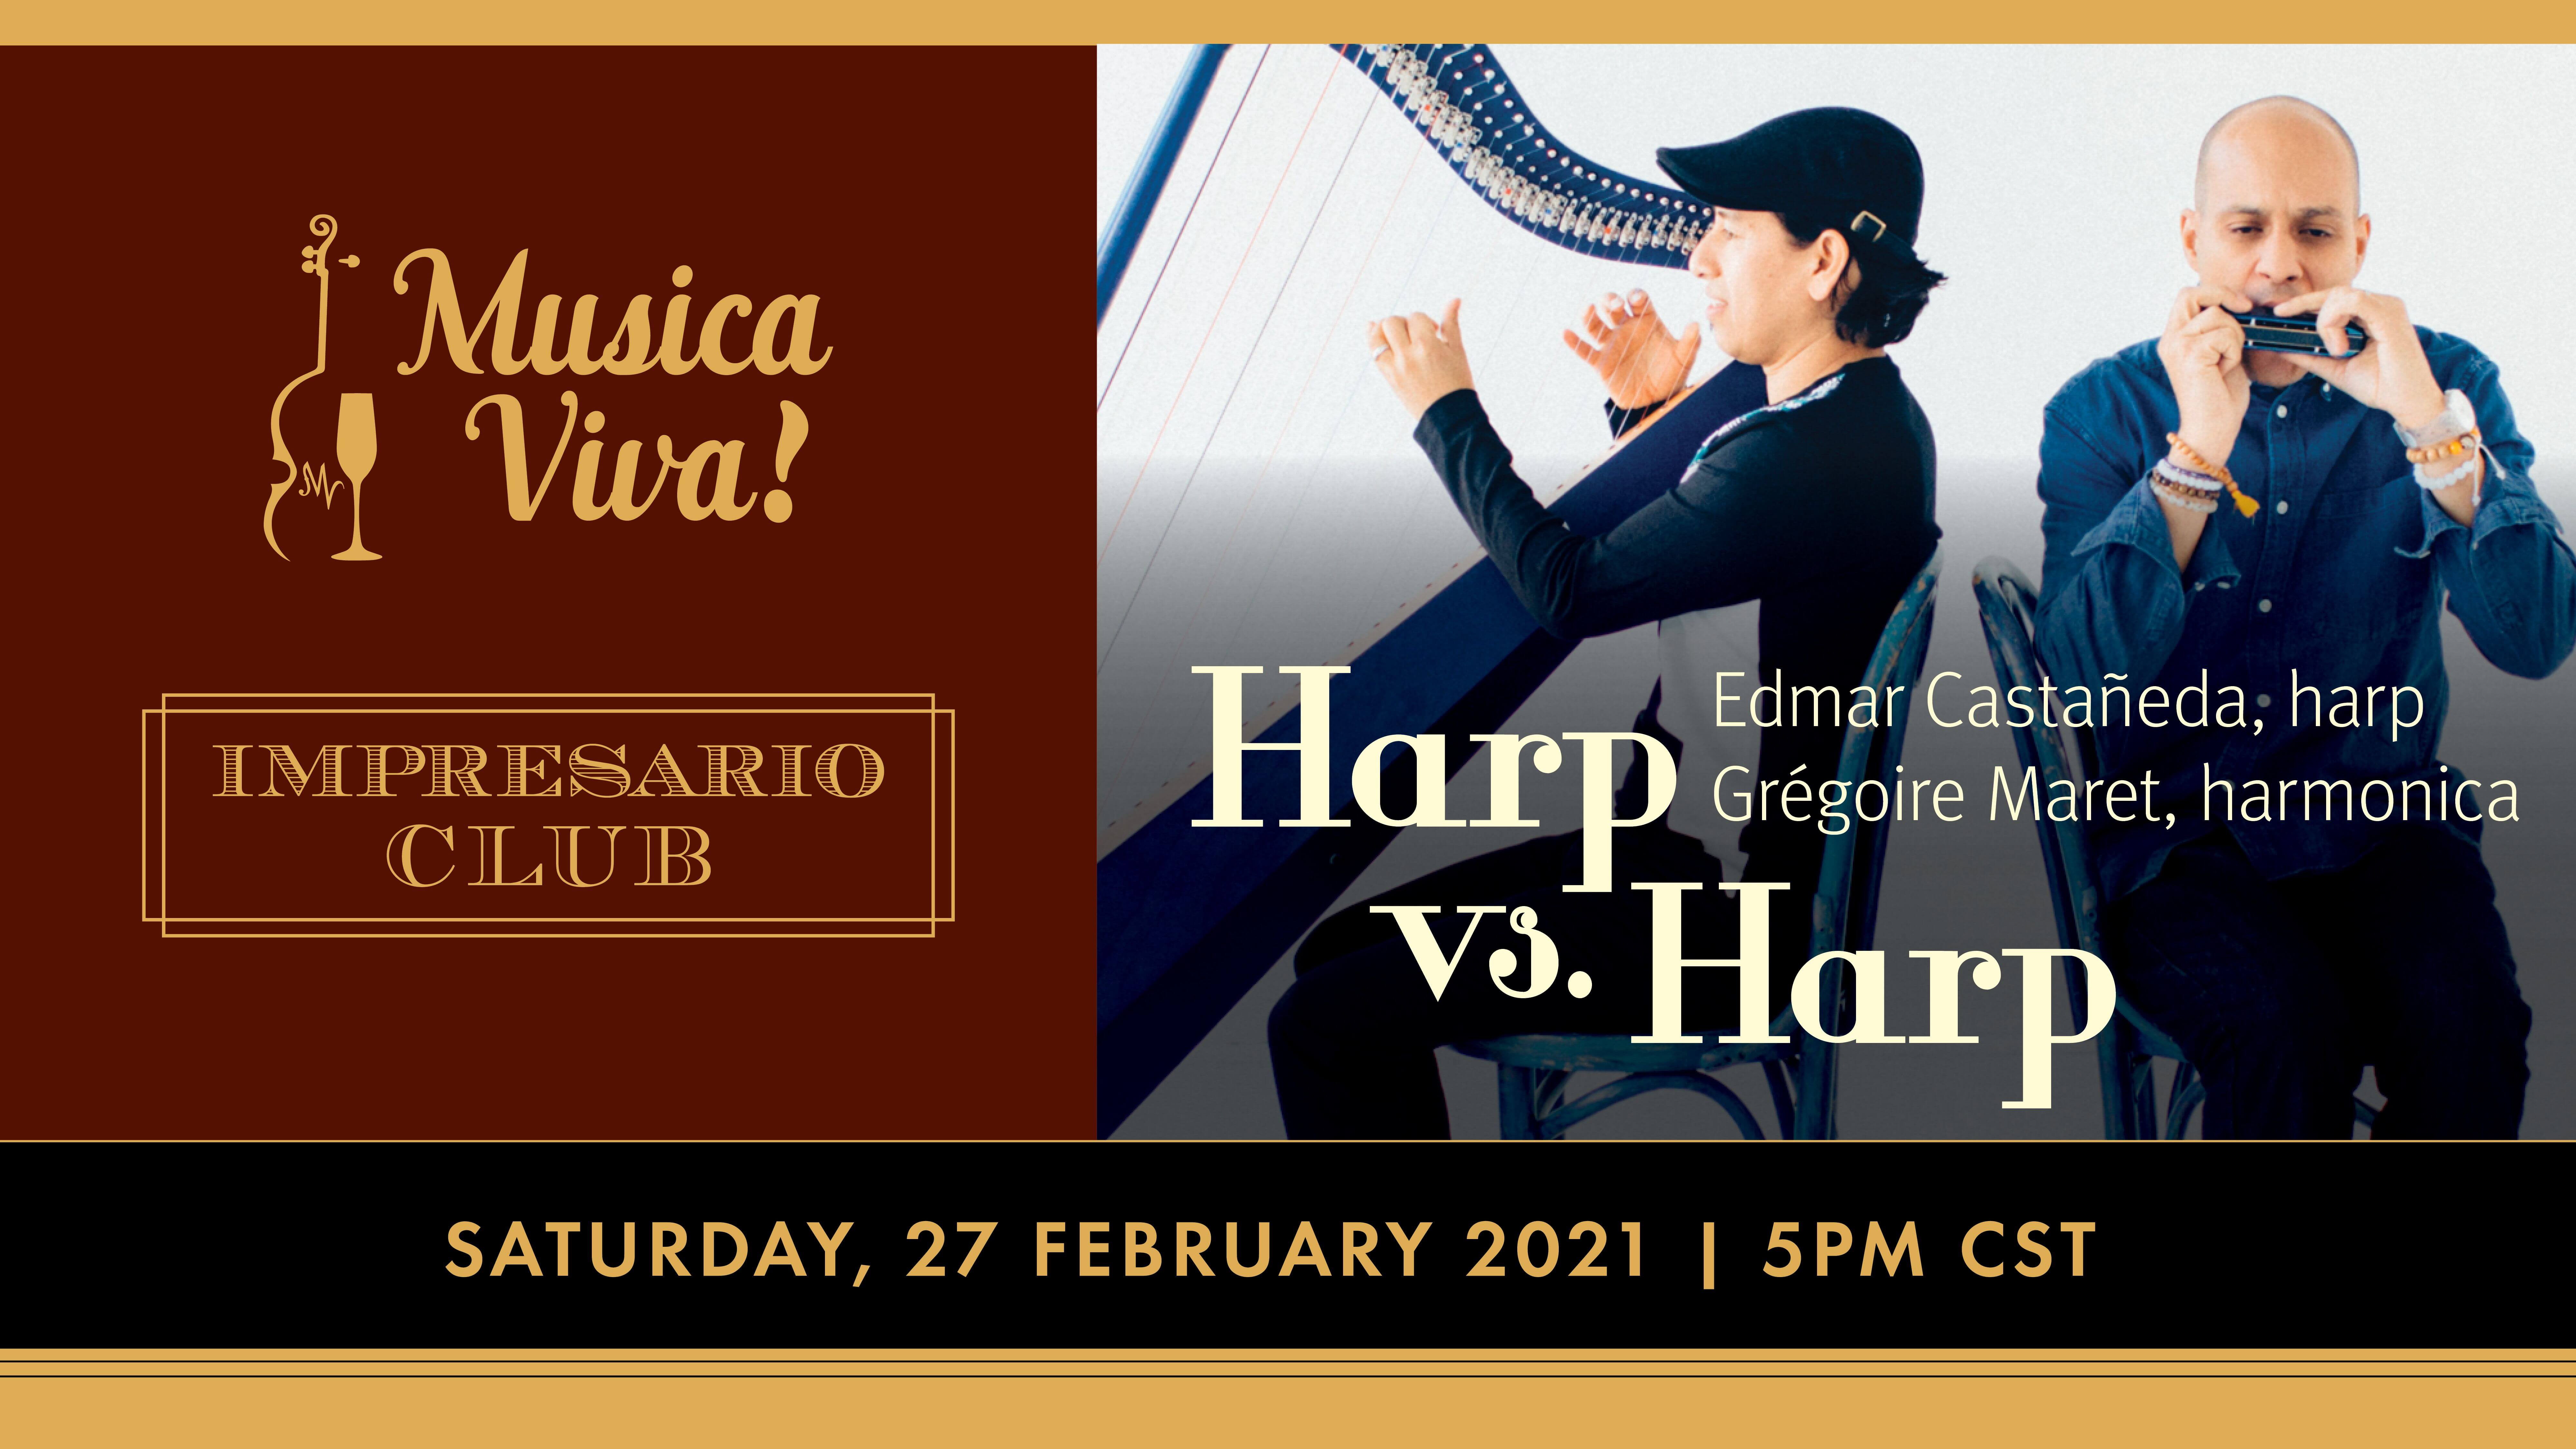 Harp vs. Harp | Impresario Club & Musica Viva!